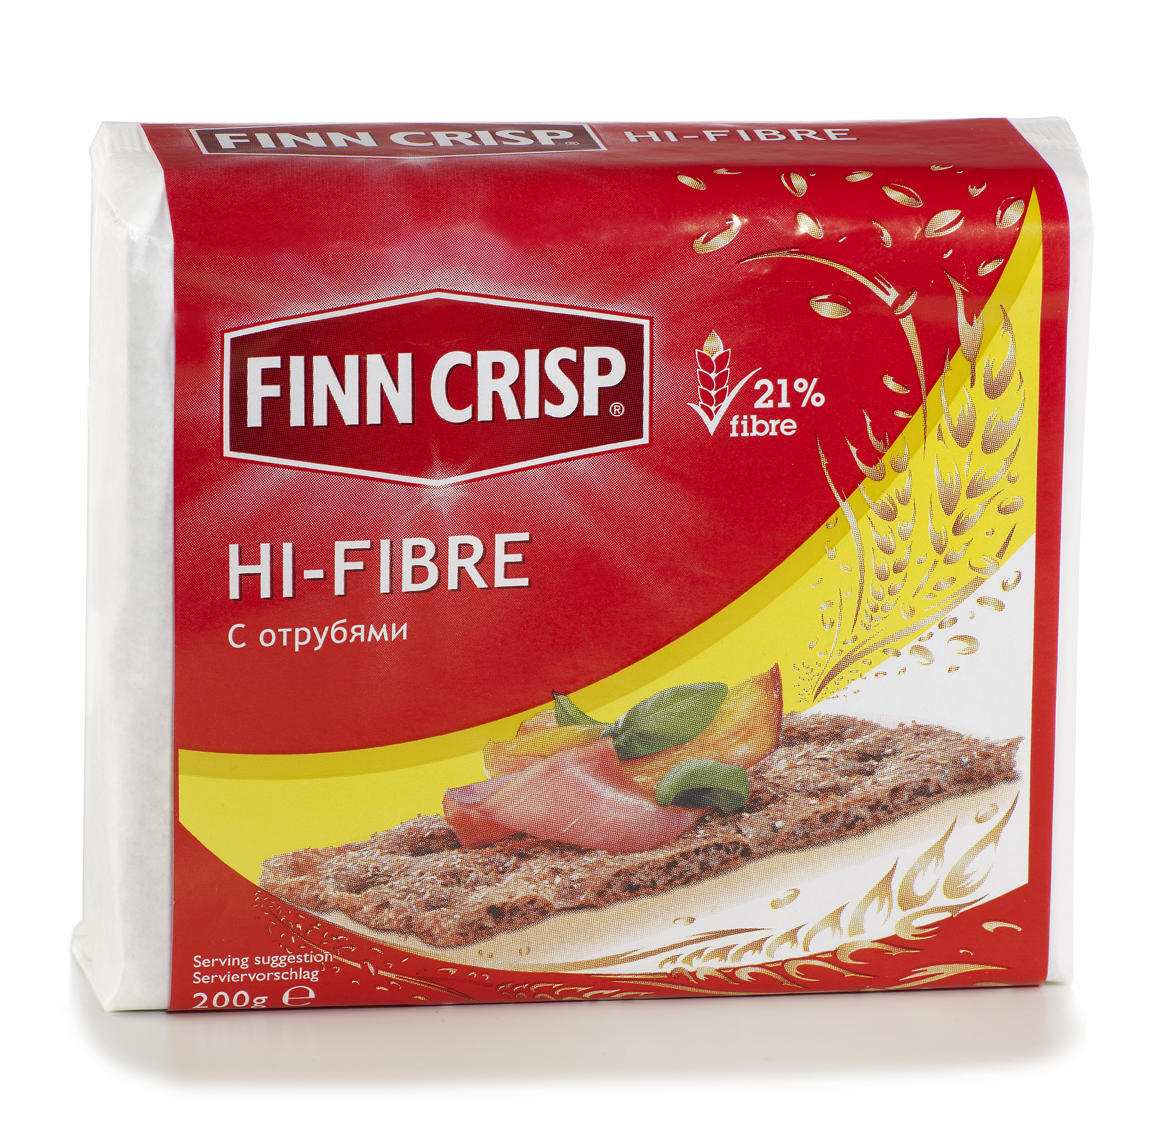 Finn Crisp Φρυγανιές Hi-Fibre Finn Crisp (200 g)